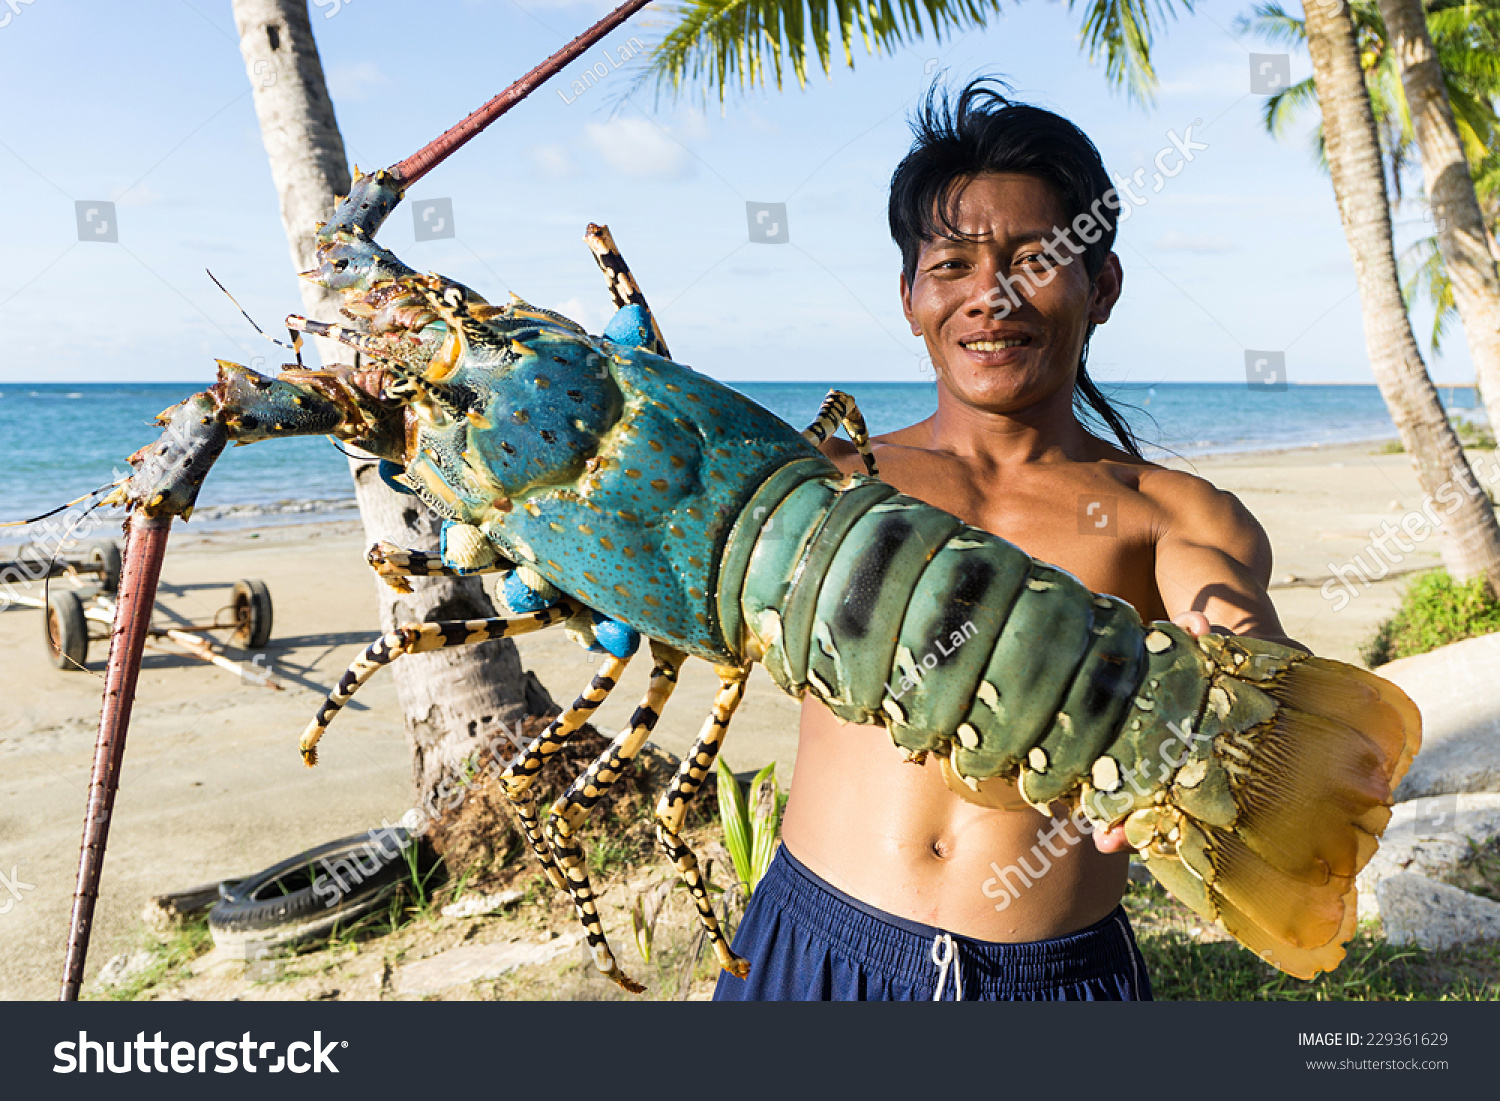 Самого большого в мире лобстера. Омары в Тайланде. Гигантский Омар. Самые большие омары. Самый большой лобстер в мире.